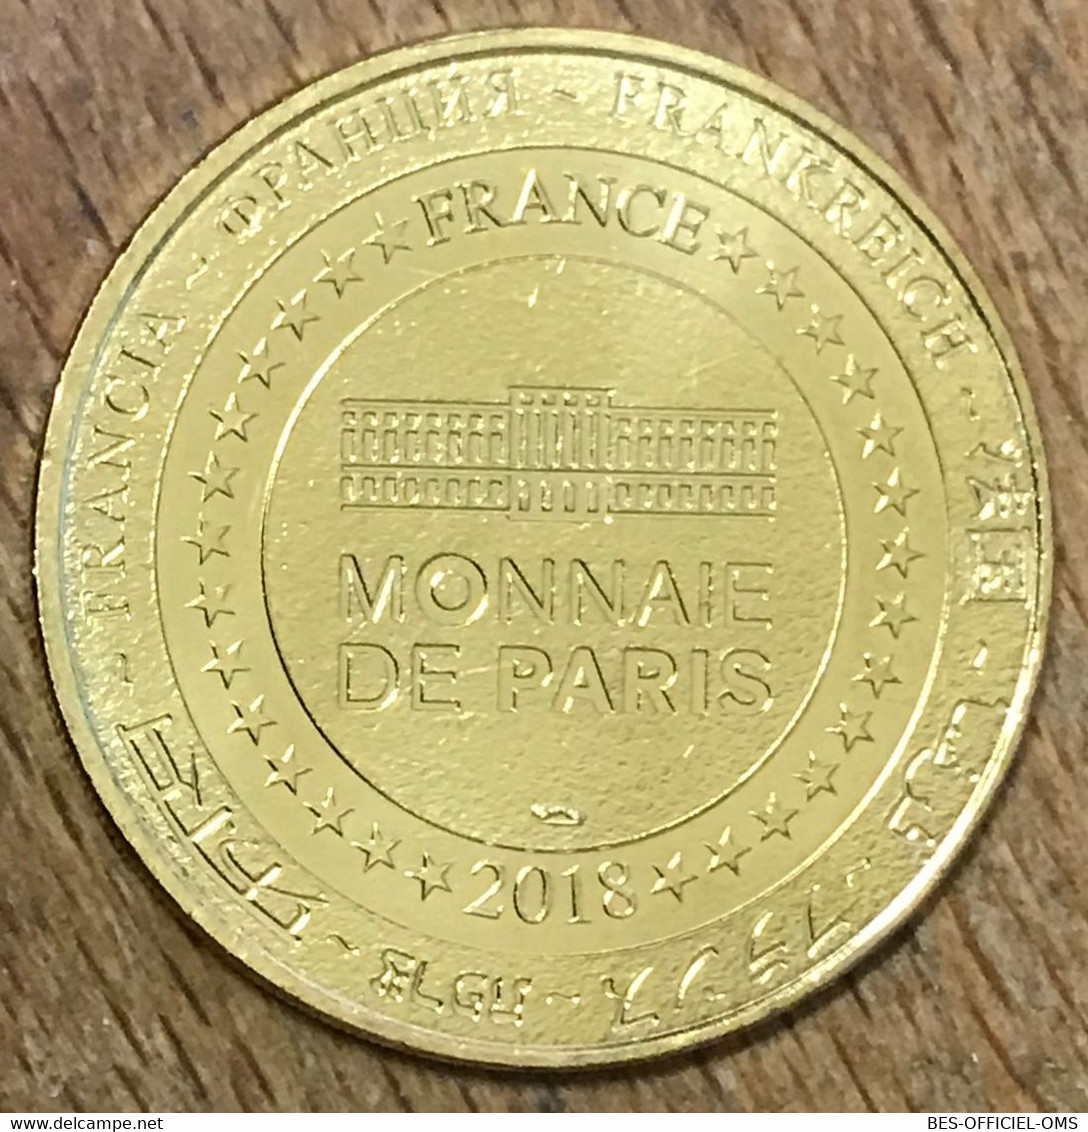 75016 PARIS MUSÉE CLÉMENCEAU MDP 2018 MÉDAILLE SOUVENIR MONNAIE DE PARIS JETON TOURISTIQUE TOKENS MEDALS COIN - 2018